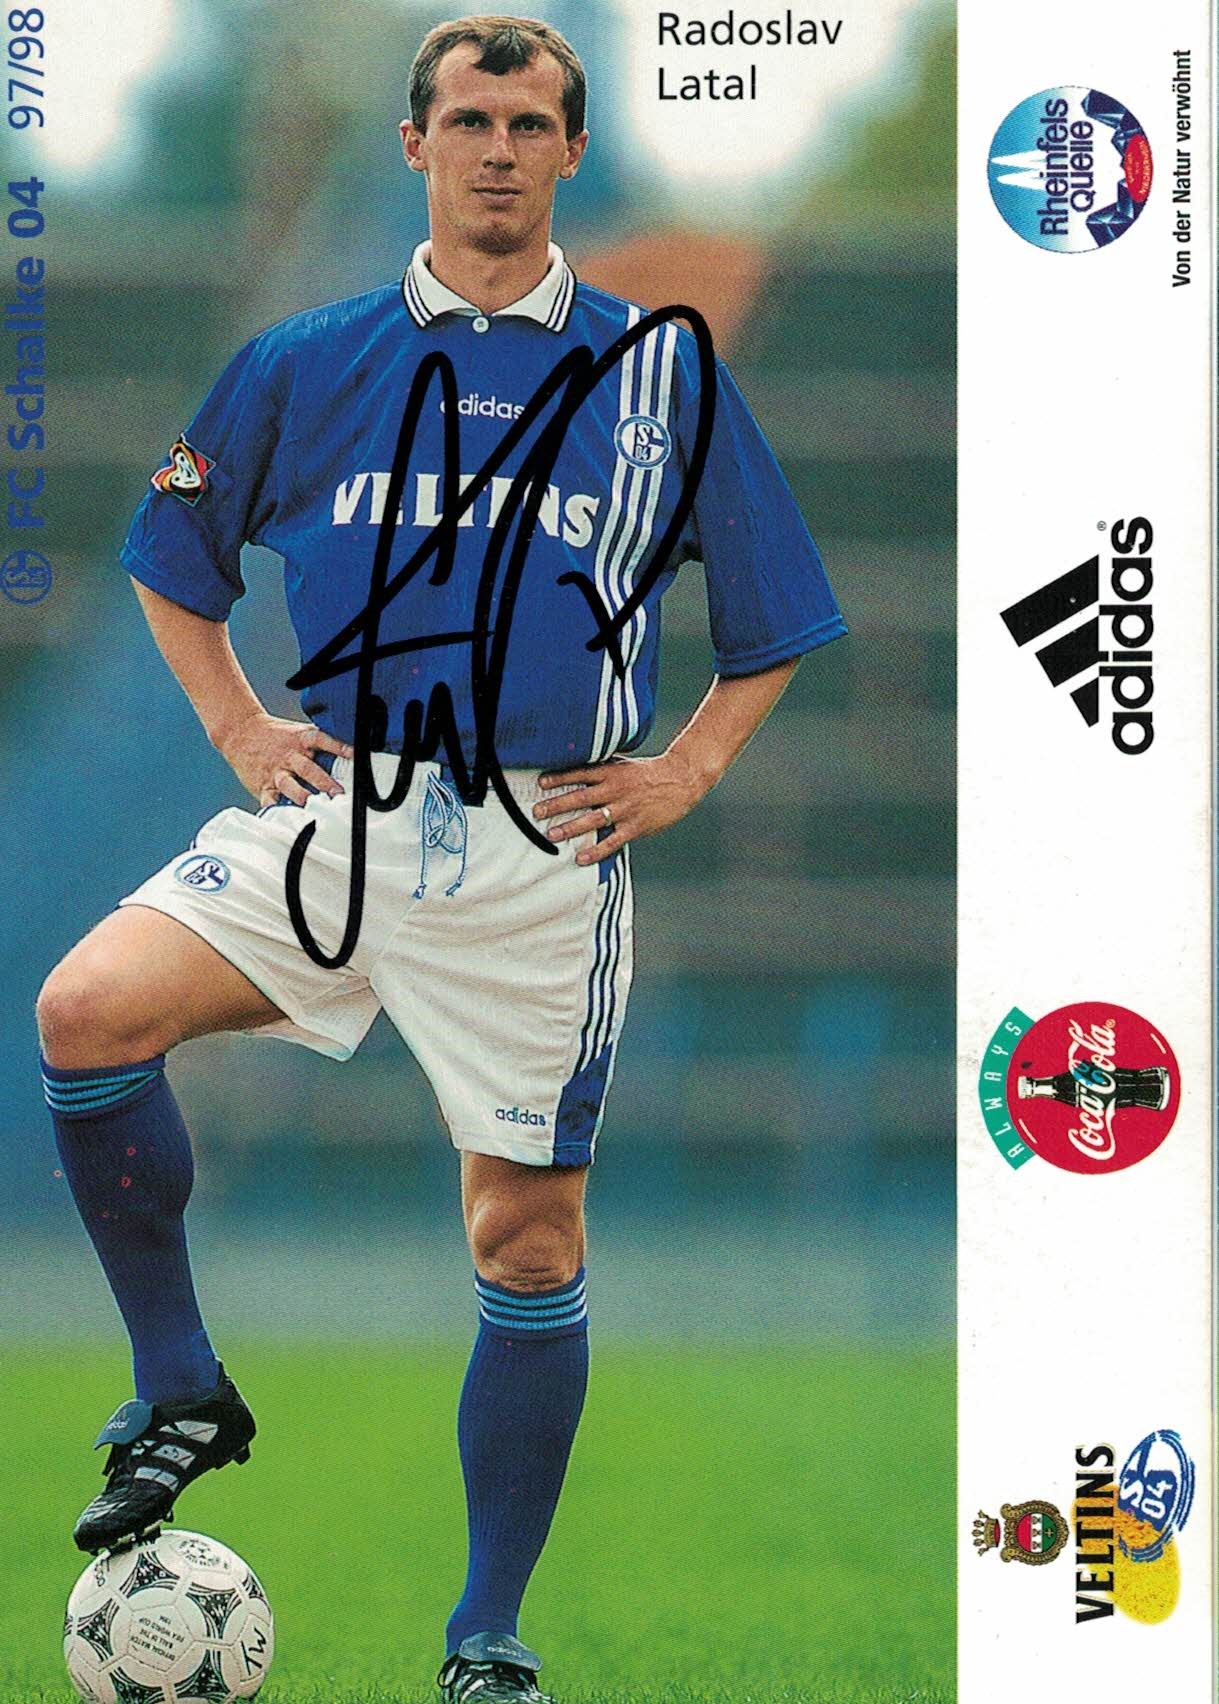 Radoslav Latal Schalke 04 1997/98 Podpisova karta autogram